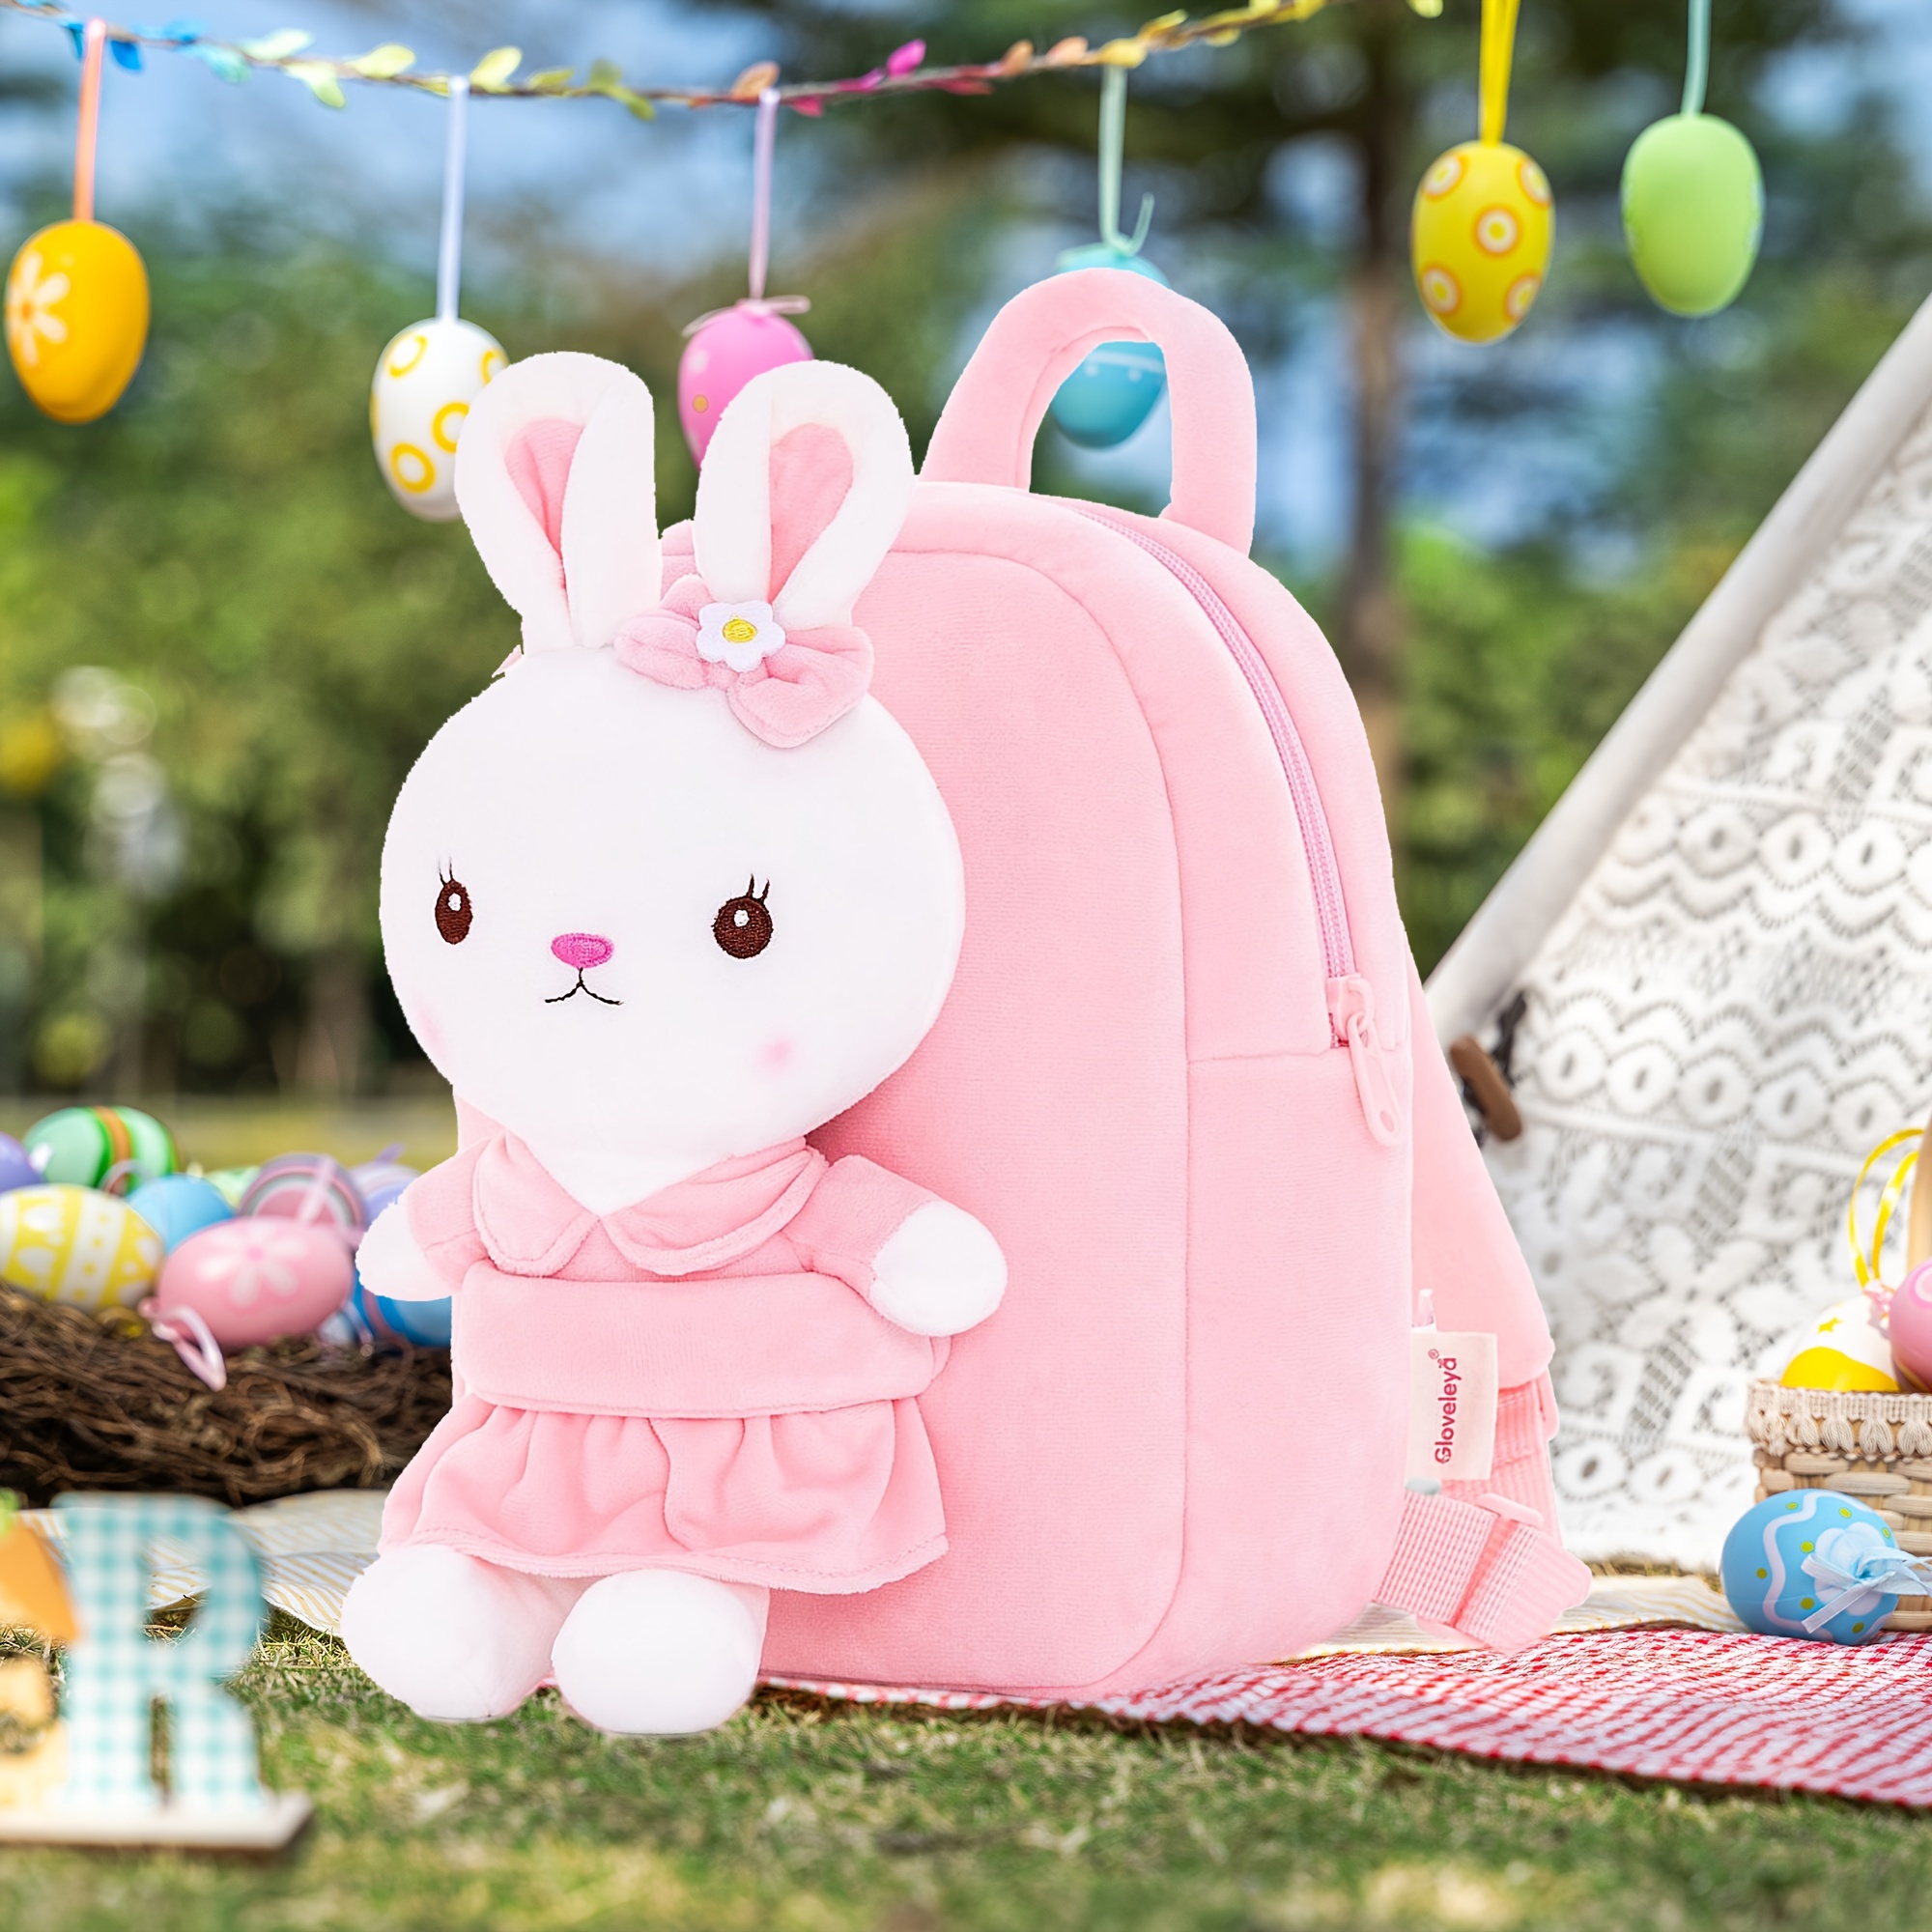 gloveleya easter bunny toy stuffed animal rabbit toys with backpack pink 9